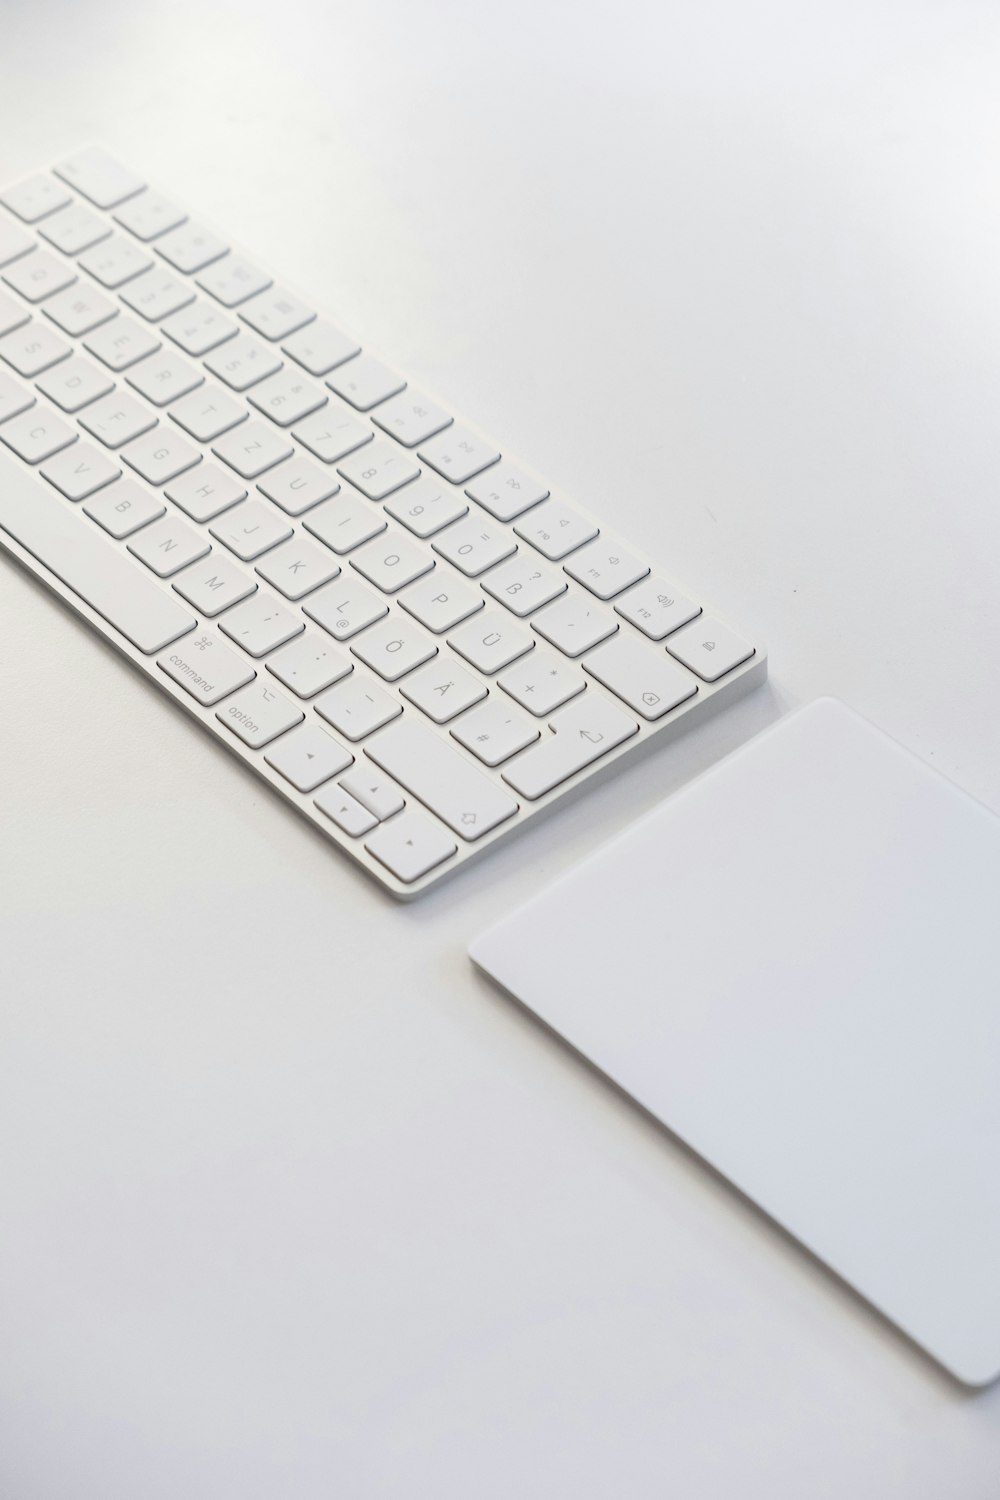 Weiße Apple-Tastatur auf weißem Tisch